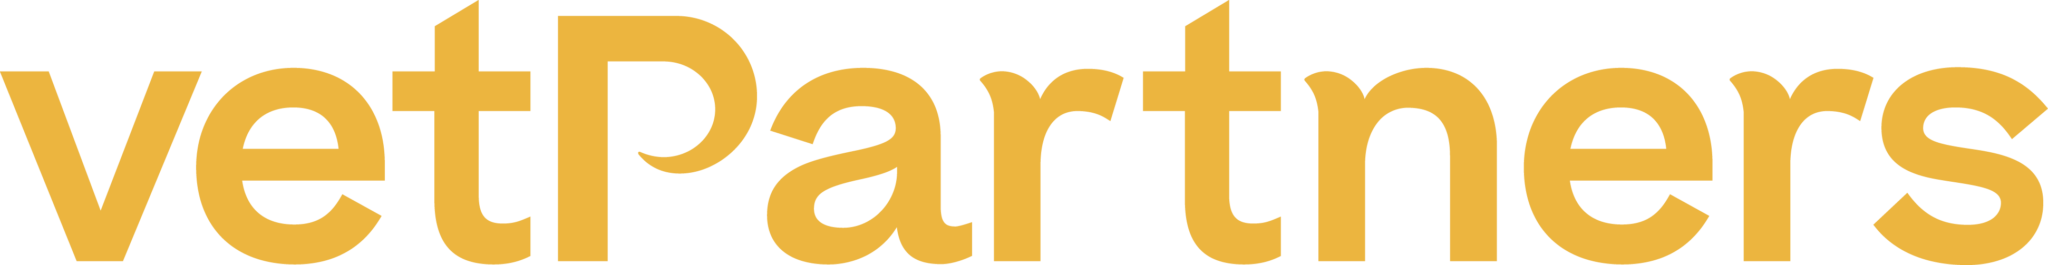 VetPartners Logo